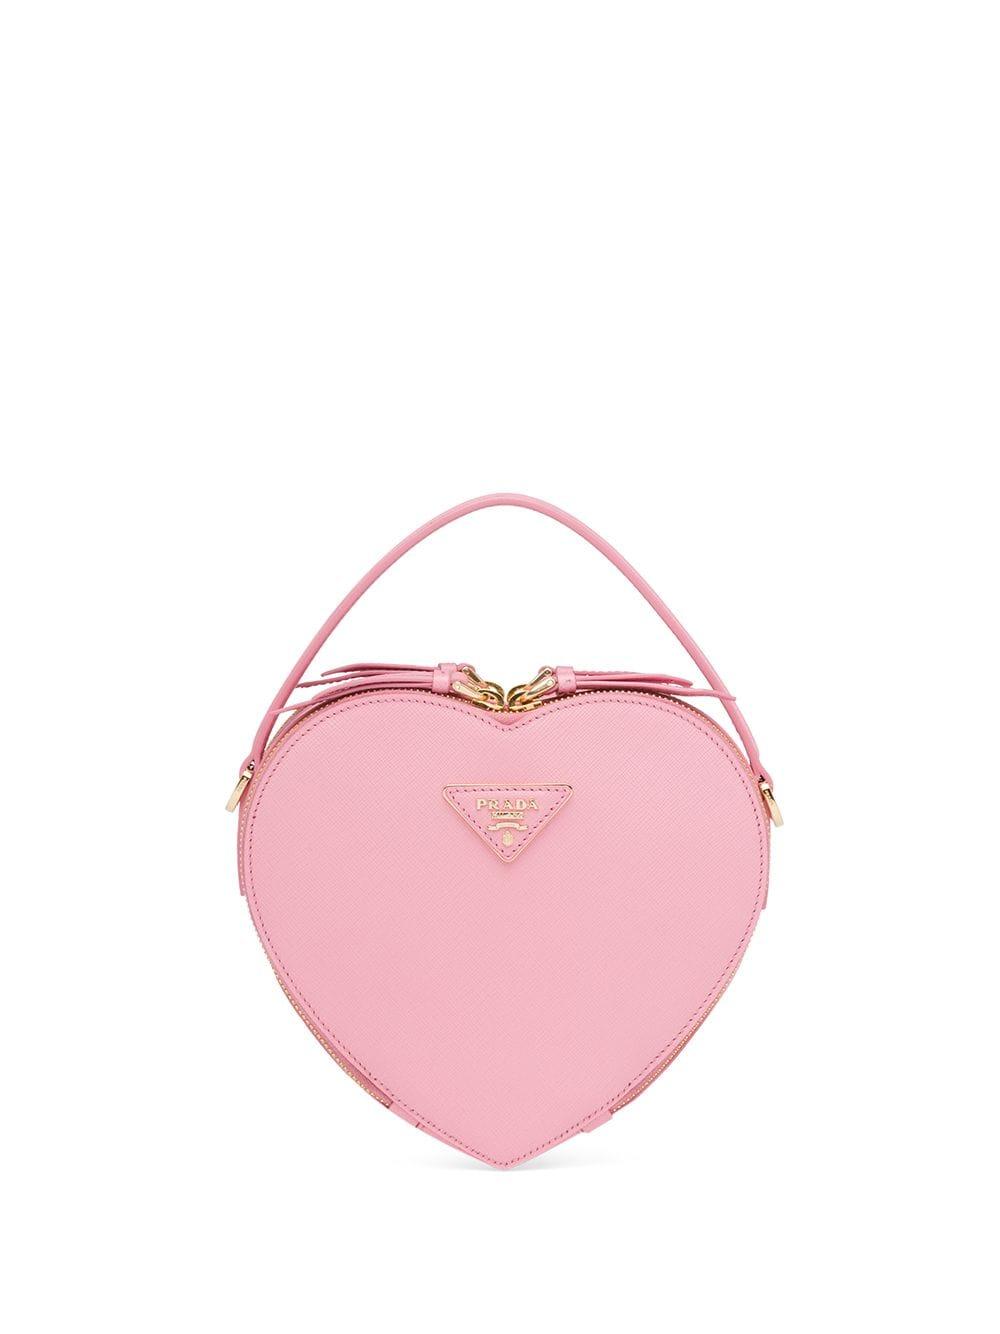 prada pink heart bag, OFF 78%,www 